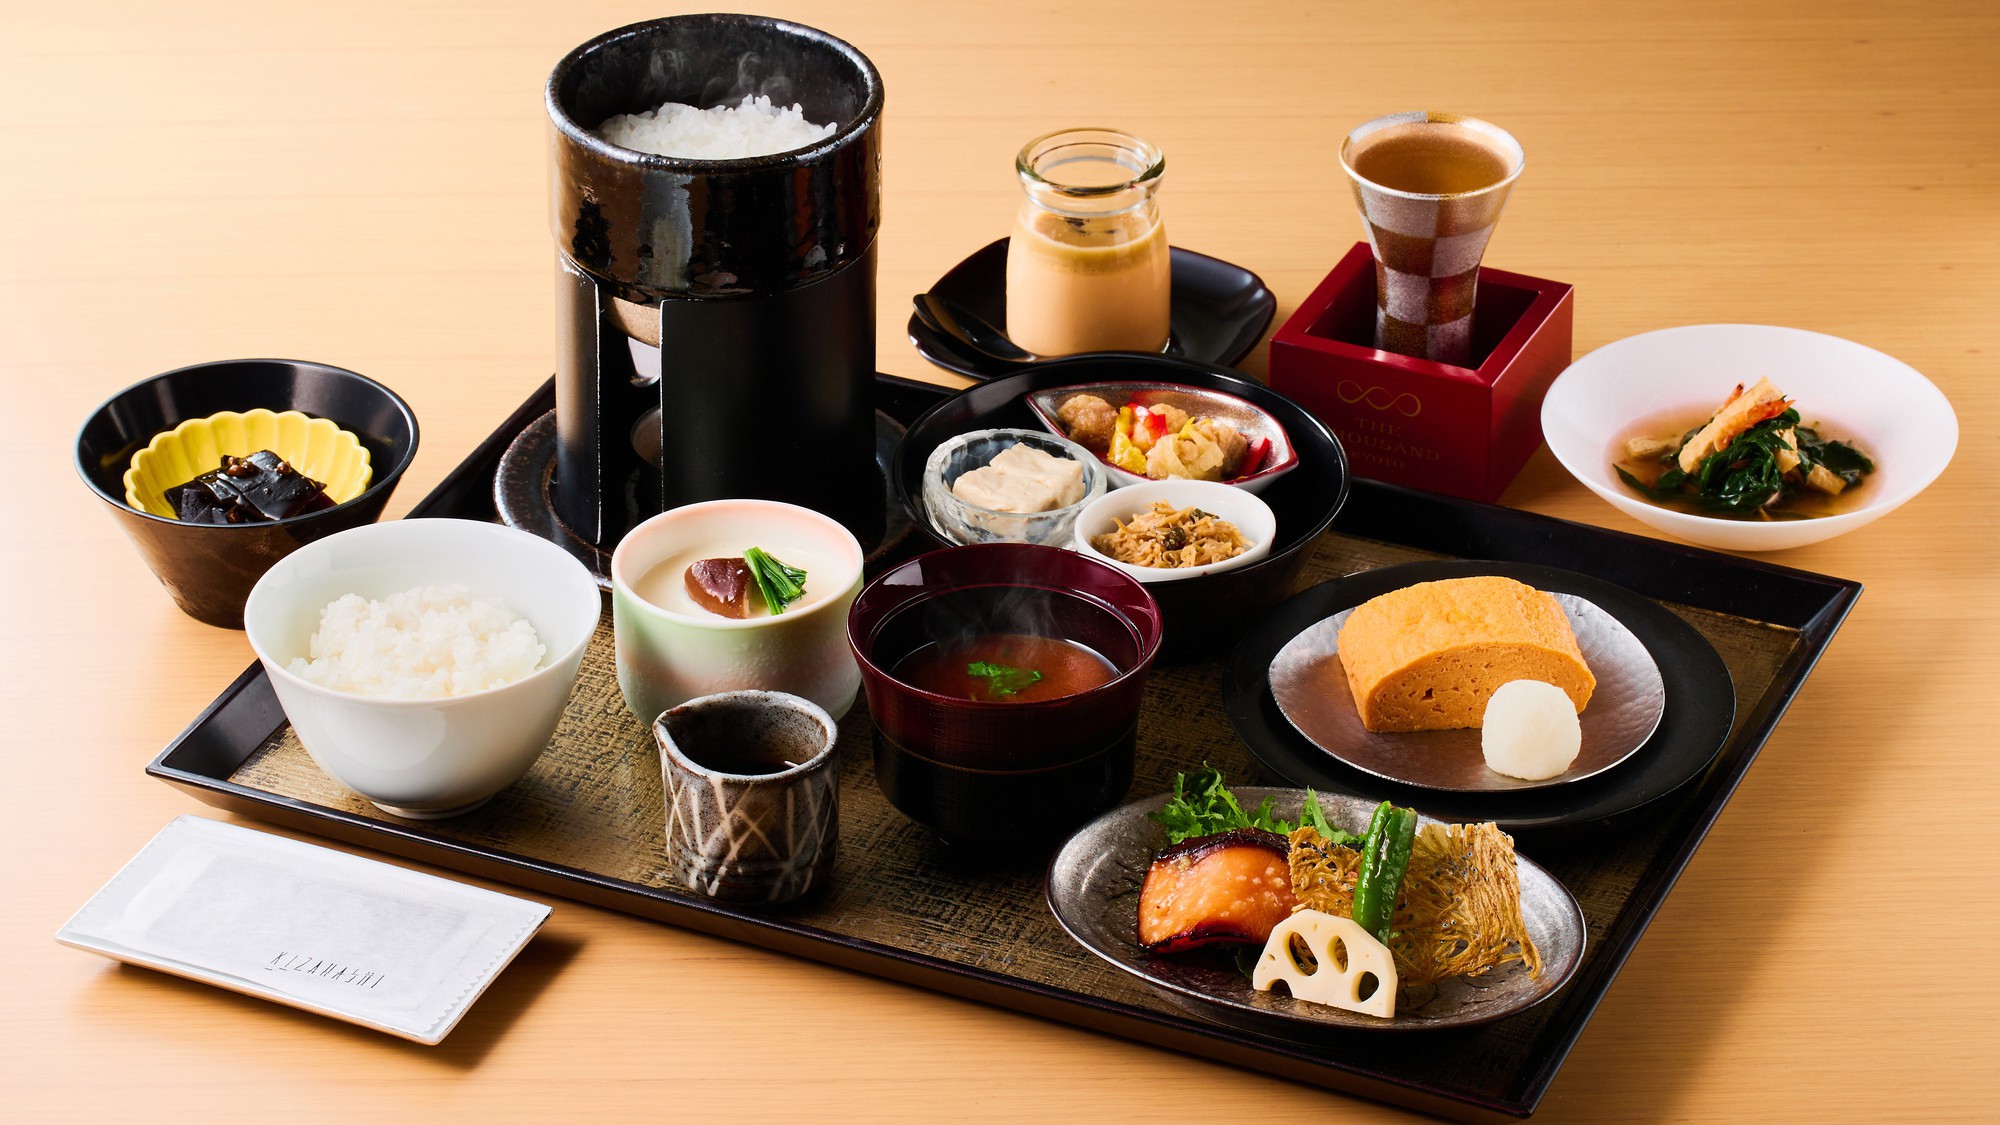 【納涼床プラン】夏の京の風物詩、鴨川で納涼床を楽しむ旅　-夕食・和洋選べるこだわり朝食付き-